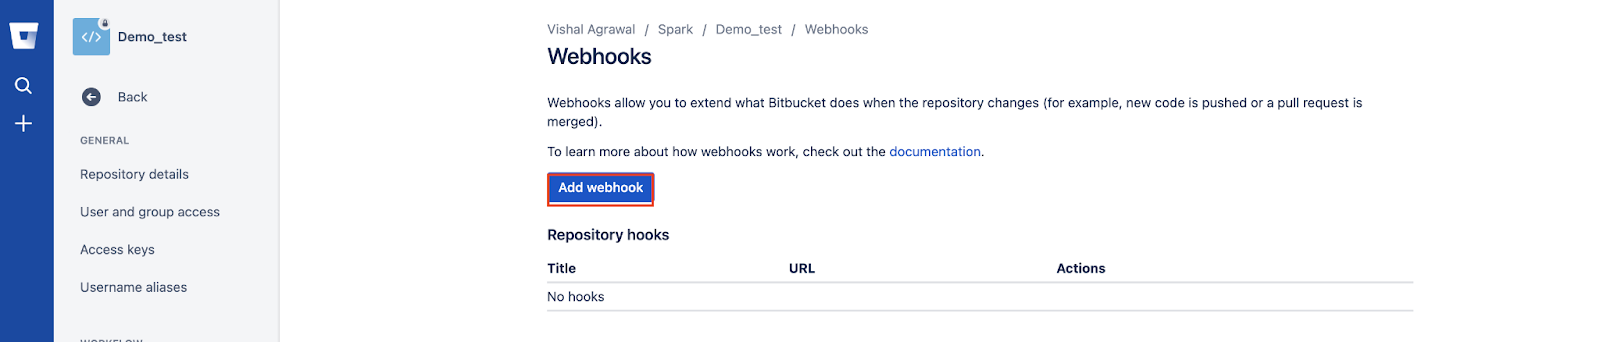 Bitbucket Webhook: Step 2.2